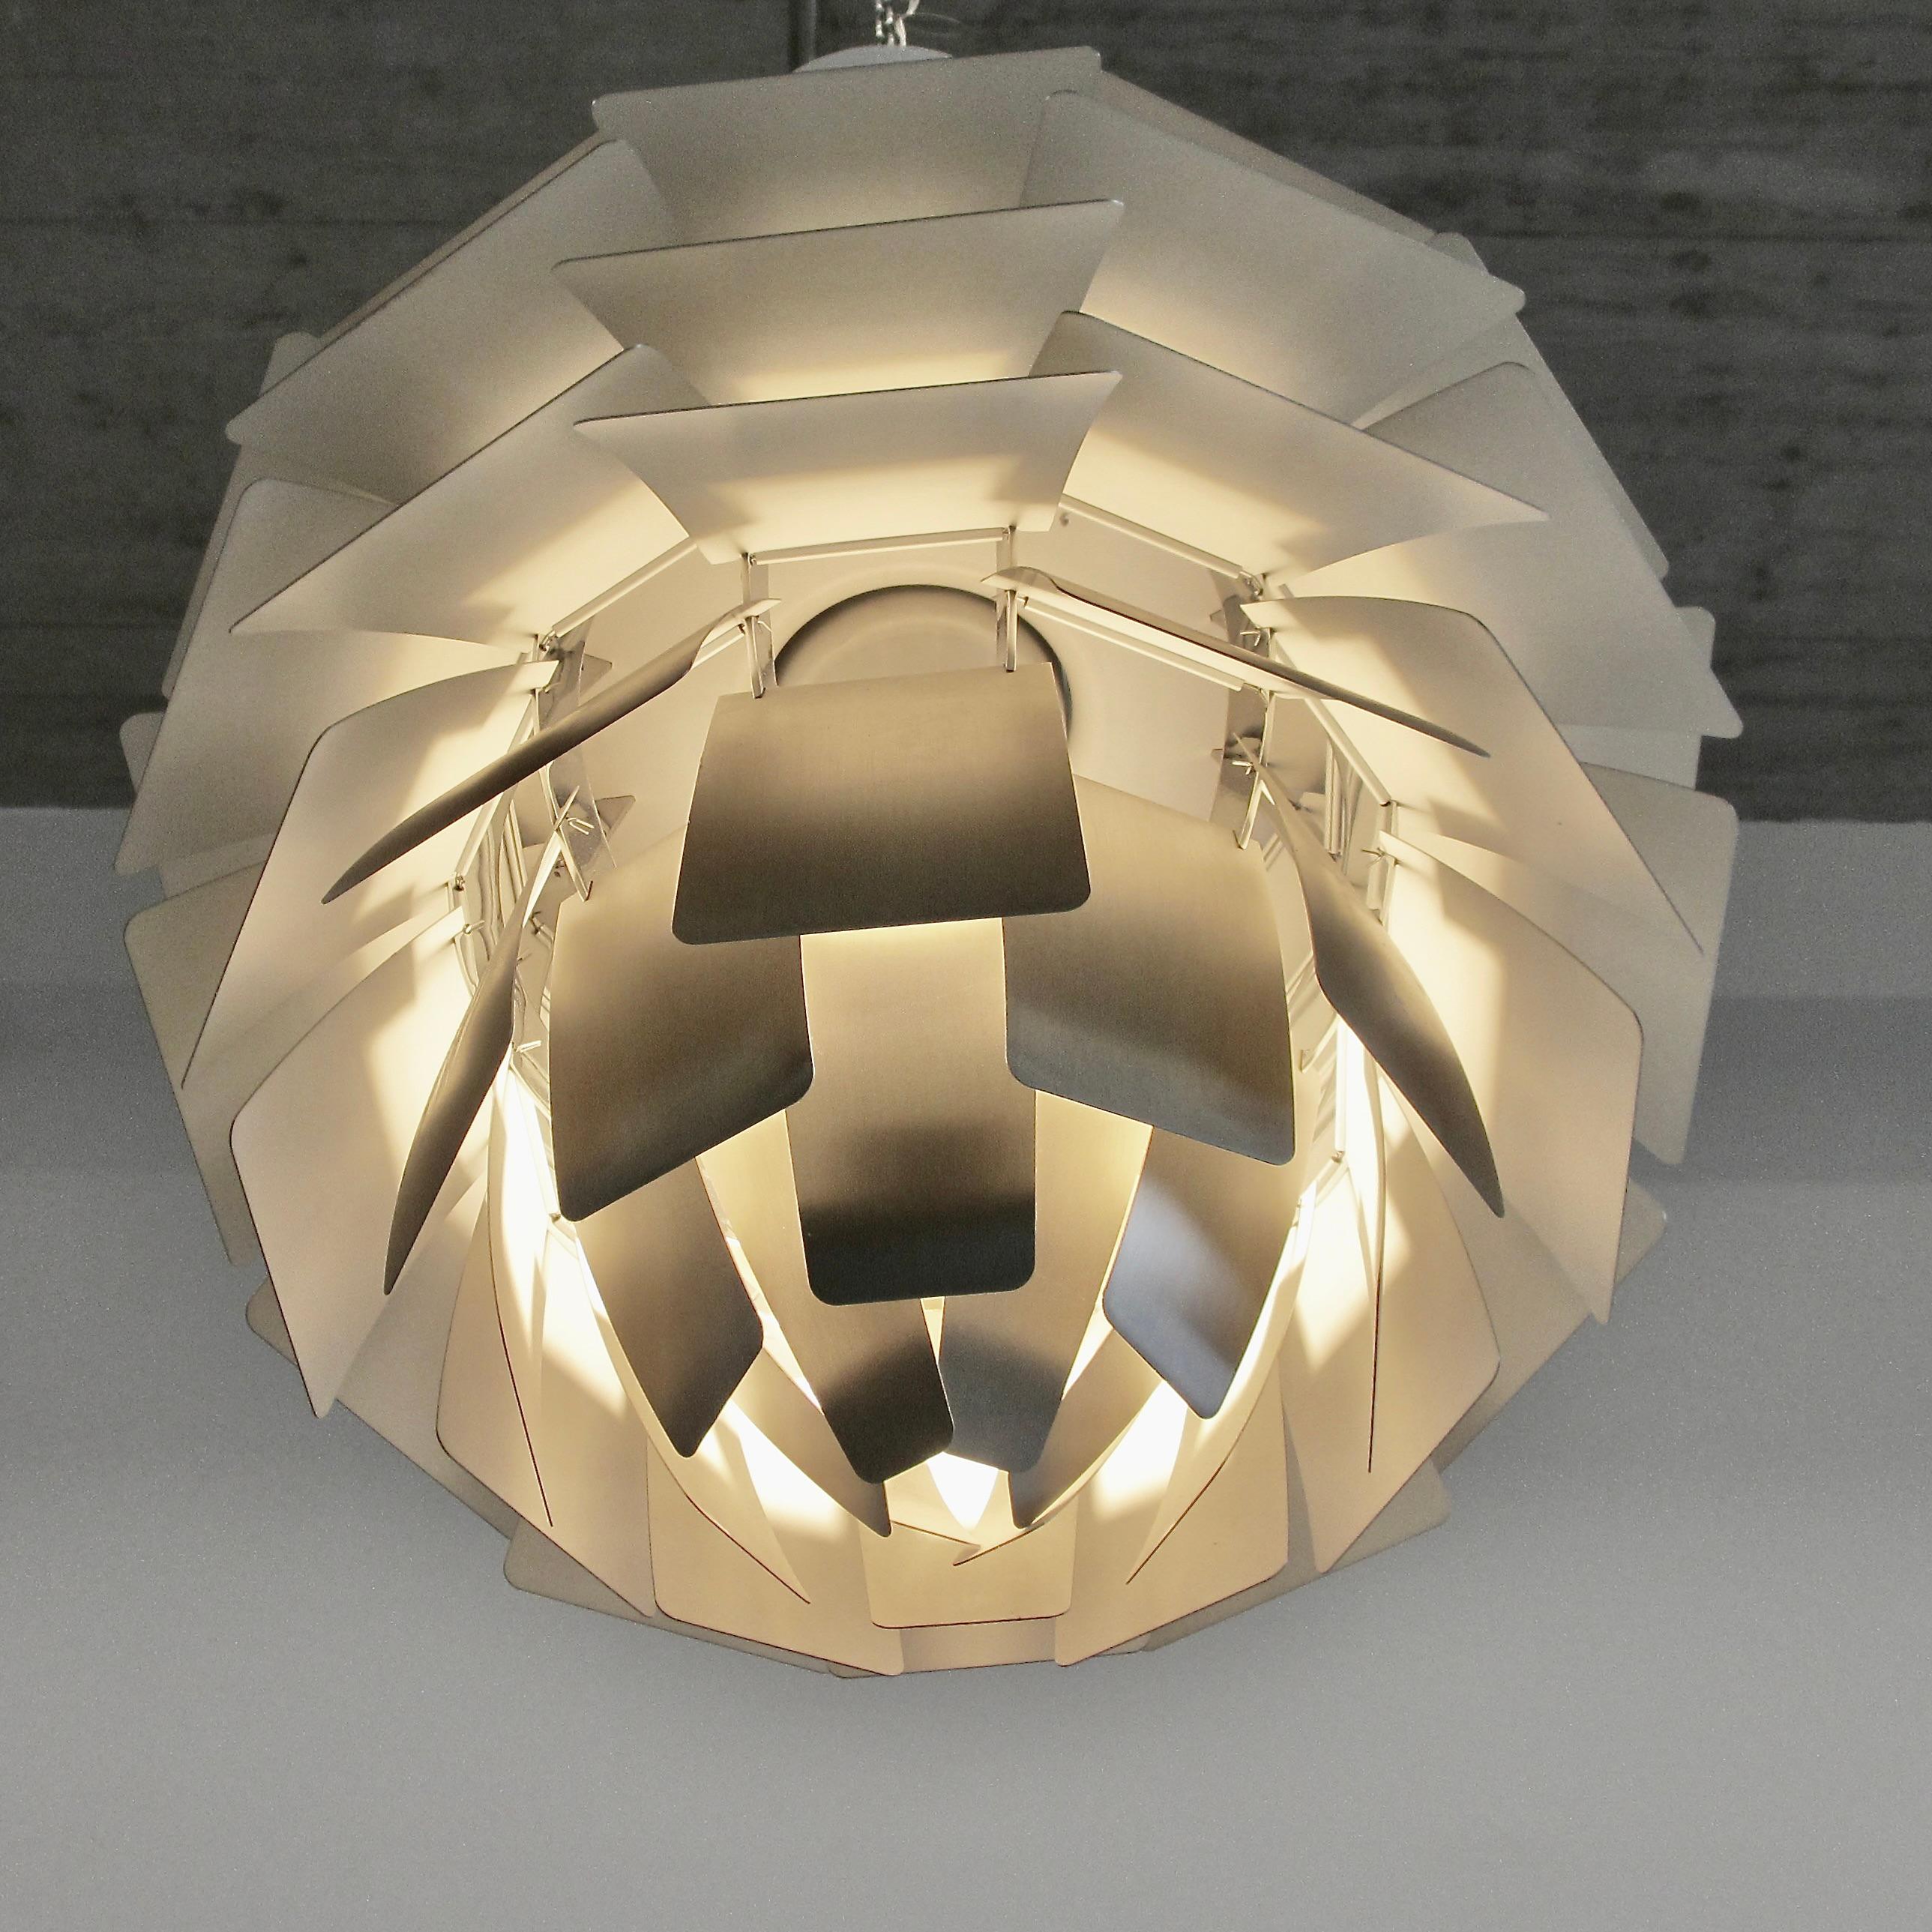 Pendelleuchte entworfen von Poul Henningsen. Dänemark, Louis Poulsen, 2012 (Moderne der Mitte des Jahrhunderts)